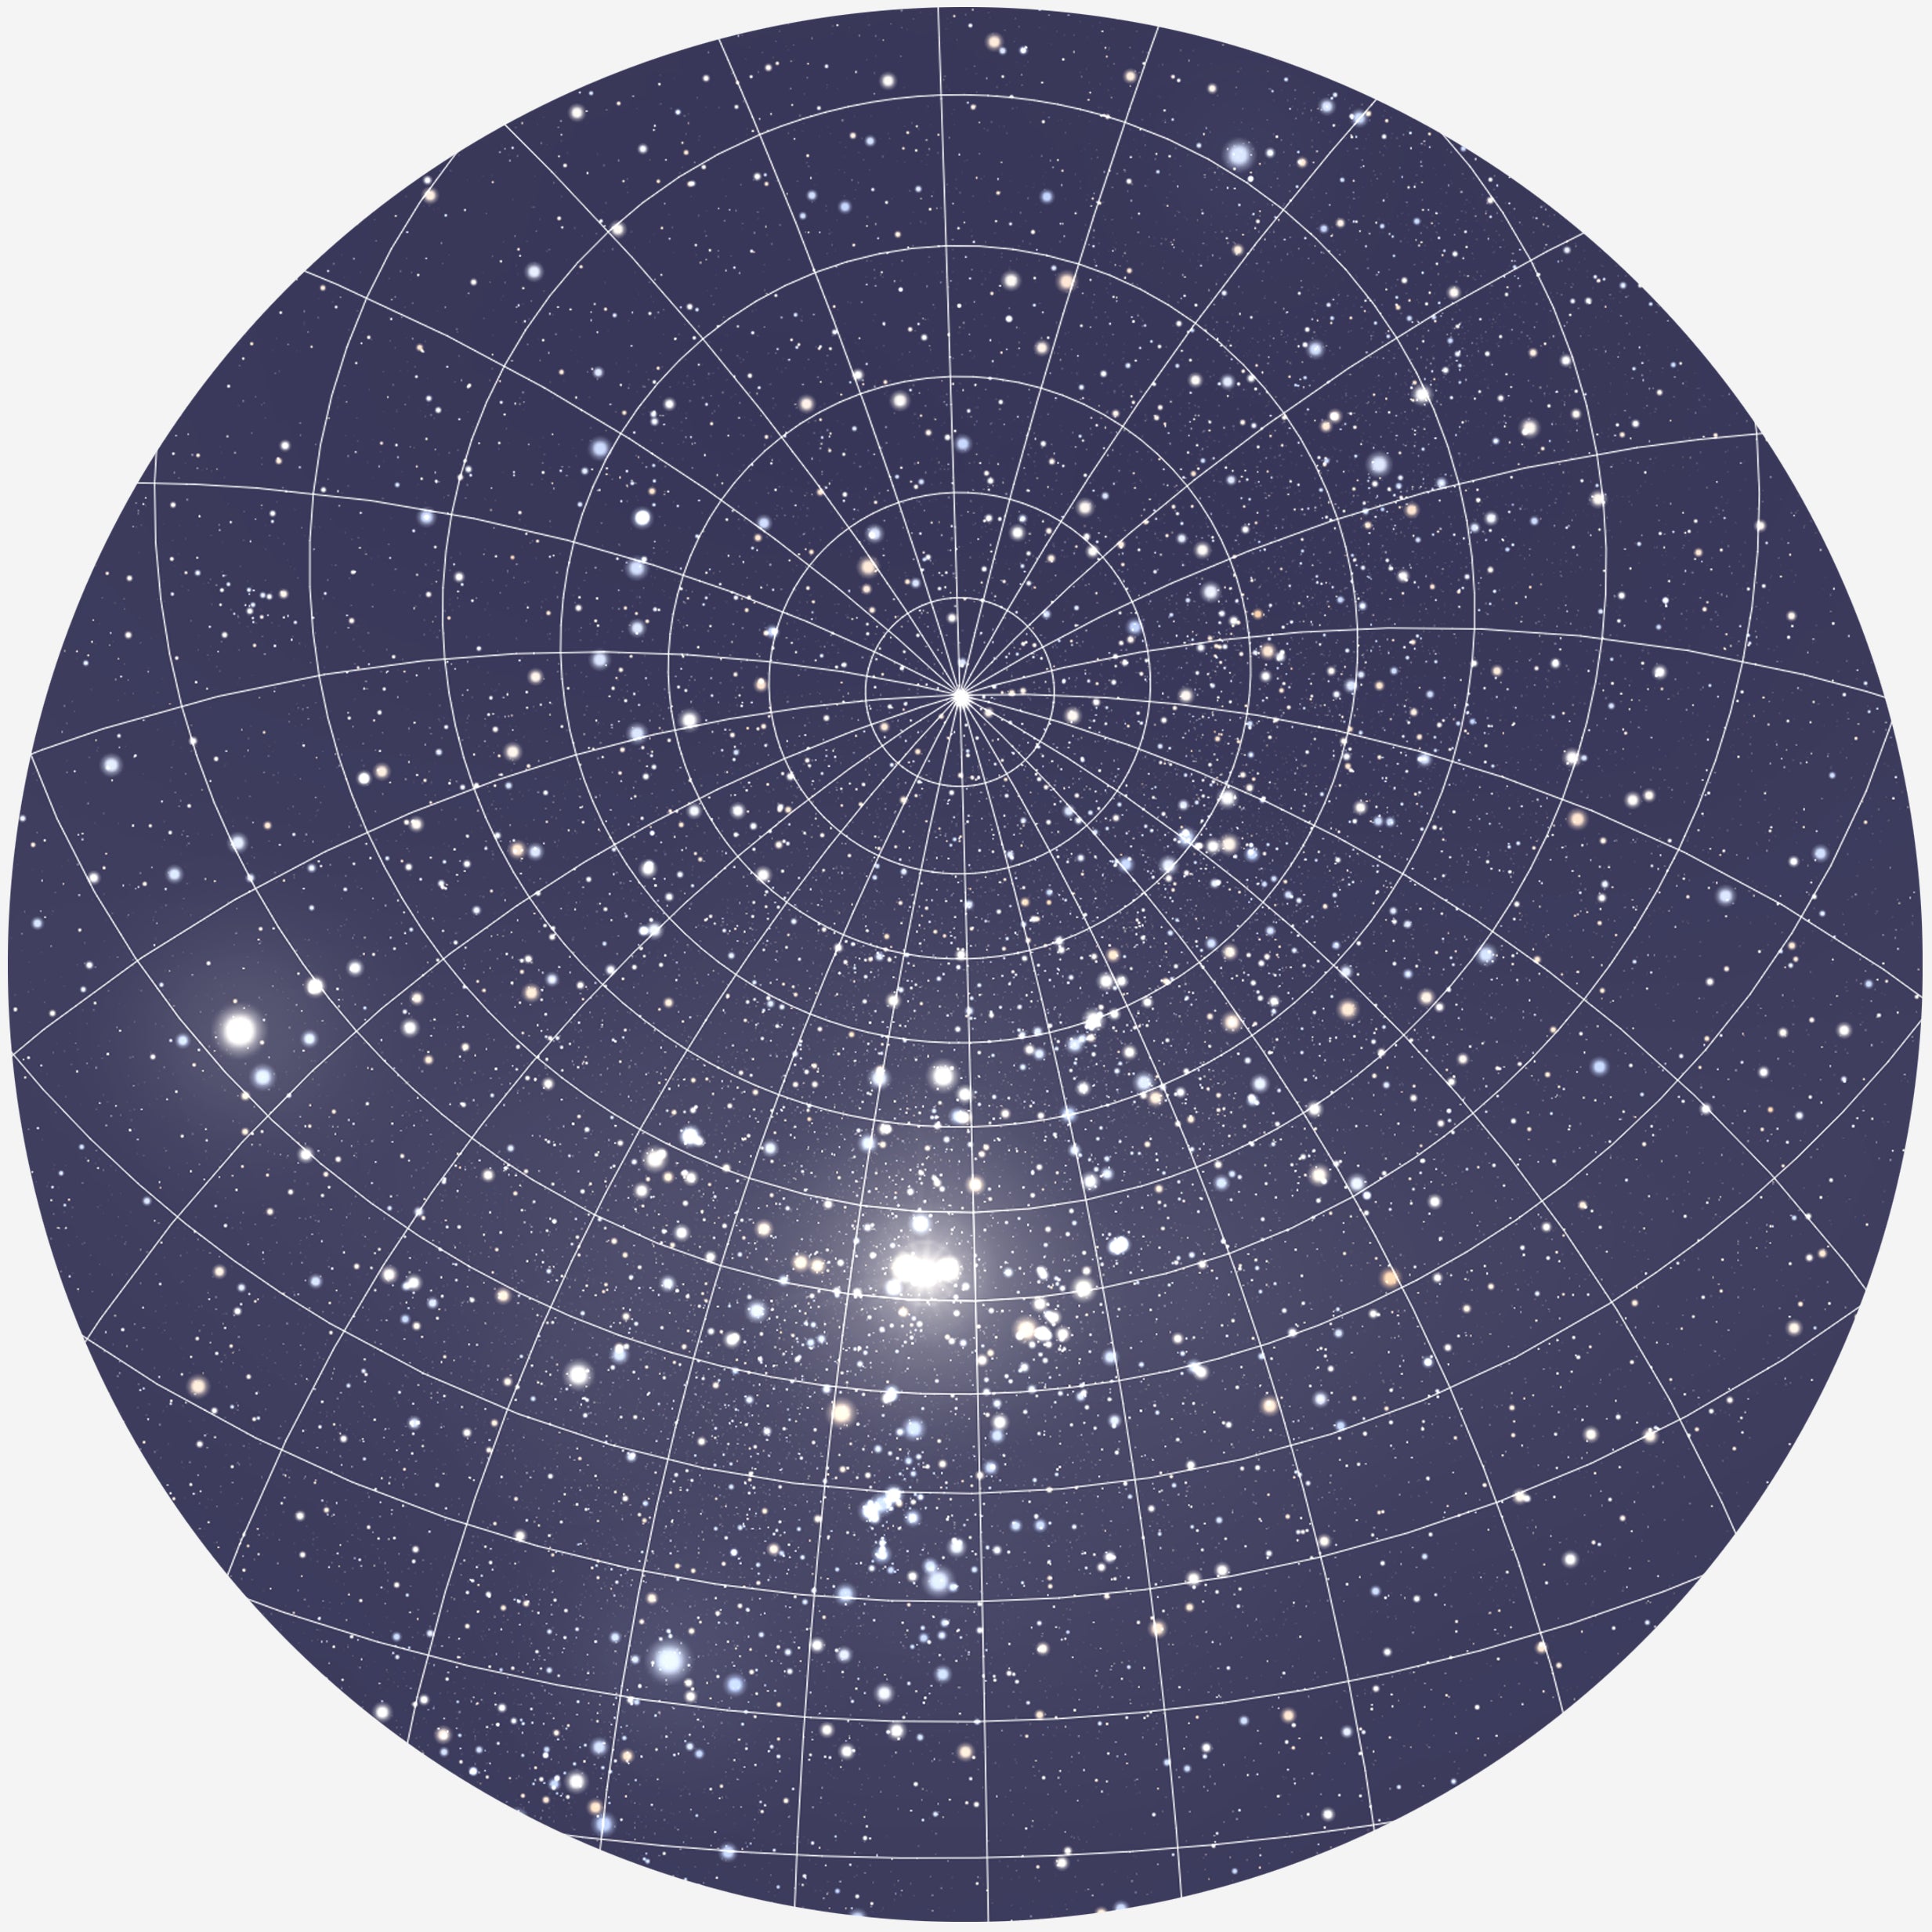 Se RUND PLAKAT MED PERSONLIG STJERNEHIMMEL (MØRKEBLÅ) - 30 cm / Stjernehimmel med gitter hos KISPUS